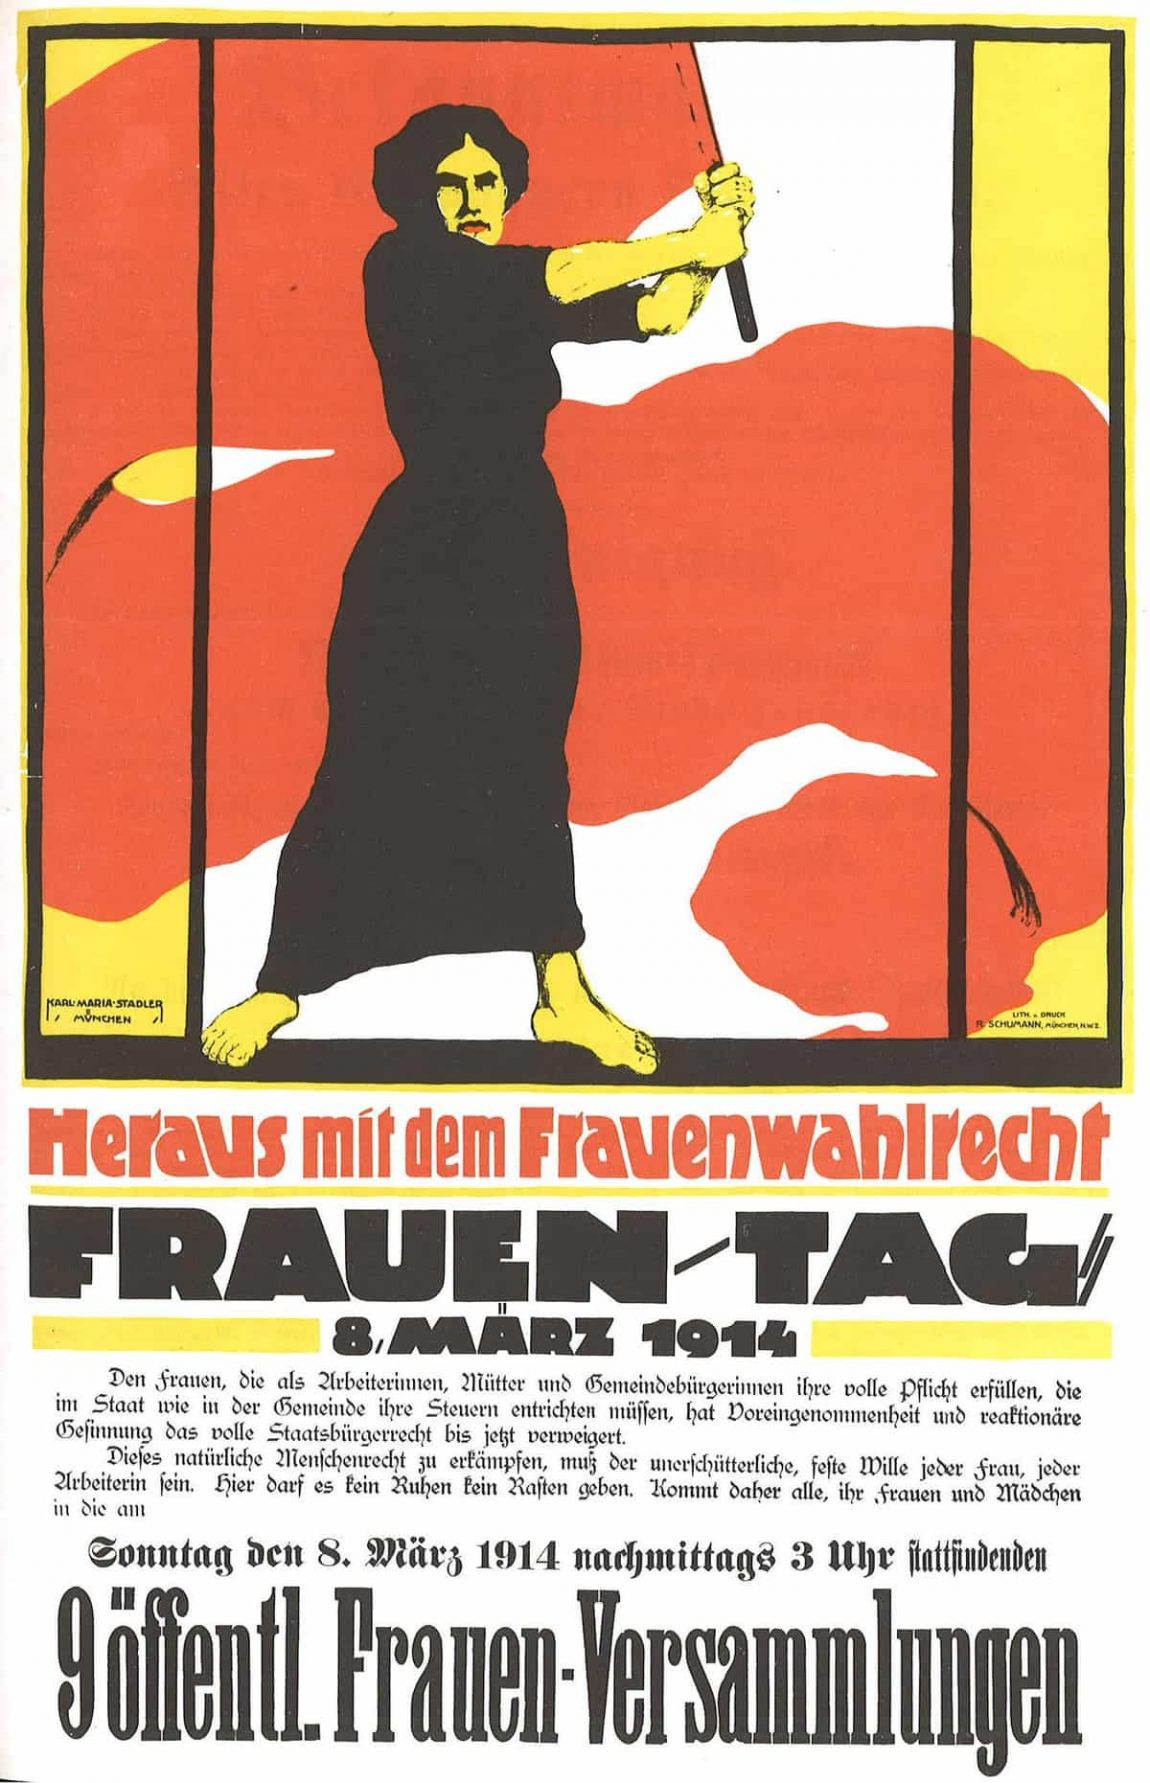 Frauentag 1914 Heraus mit dem Frauenwahlrecht 2018031219 5aa6d8c635e71